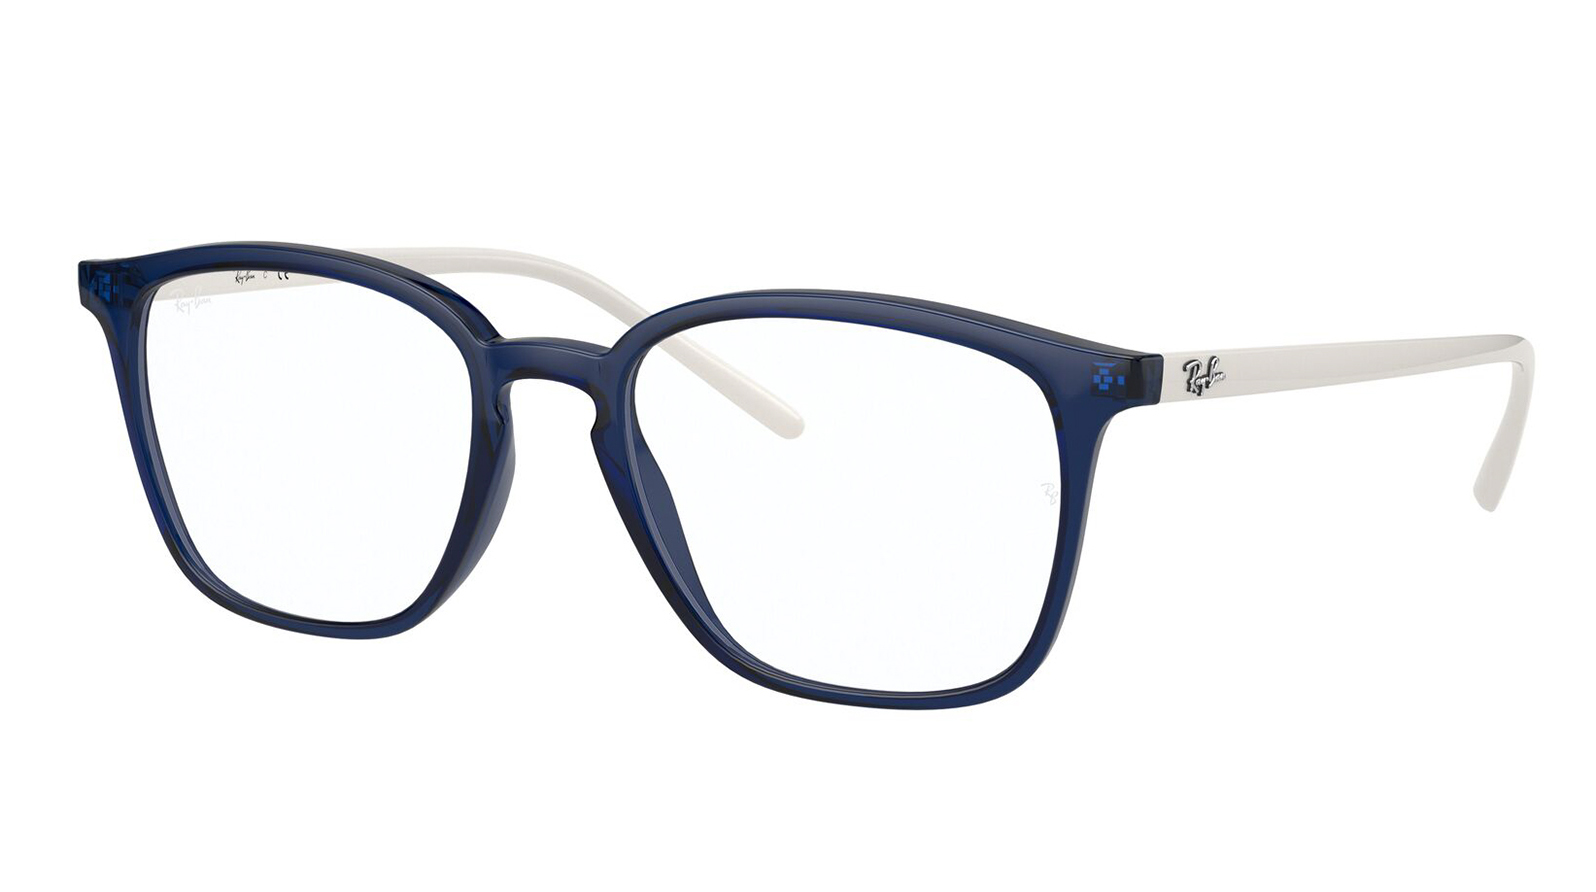 Ray-Ban RX Highstreet 7185 8084 близорукость очки оправа мужчины женщины элегантный винтаж анти синий свет линзы очки градусы